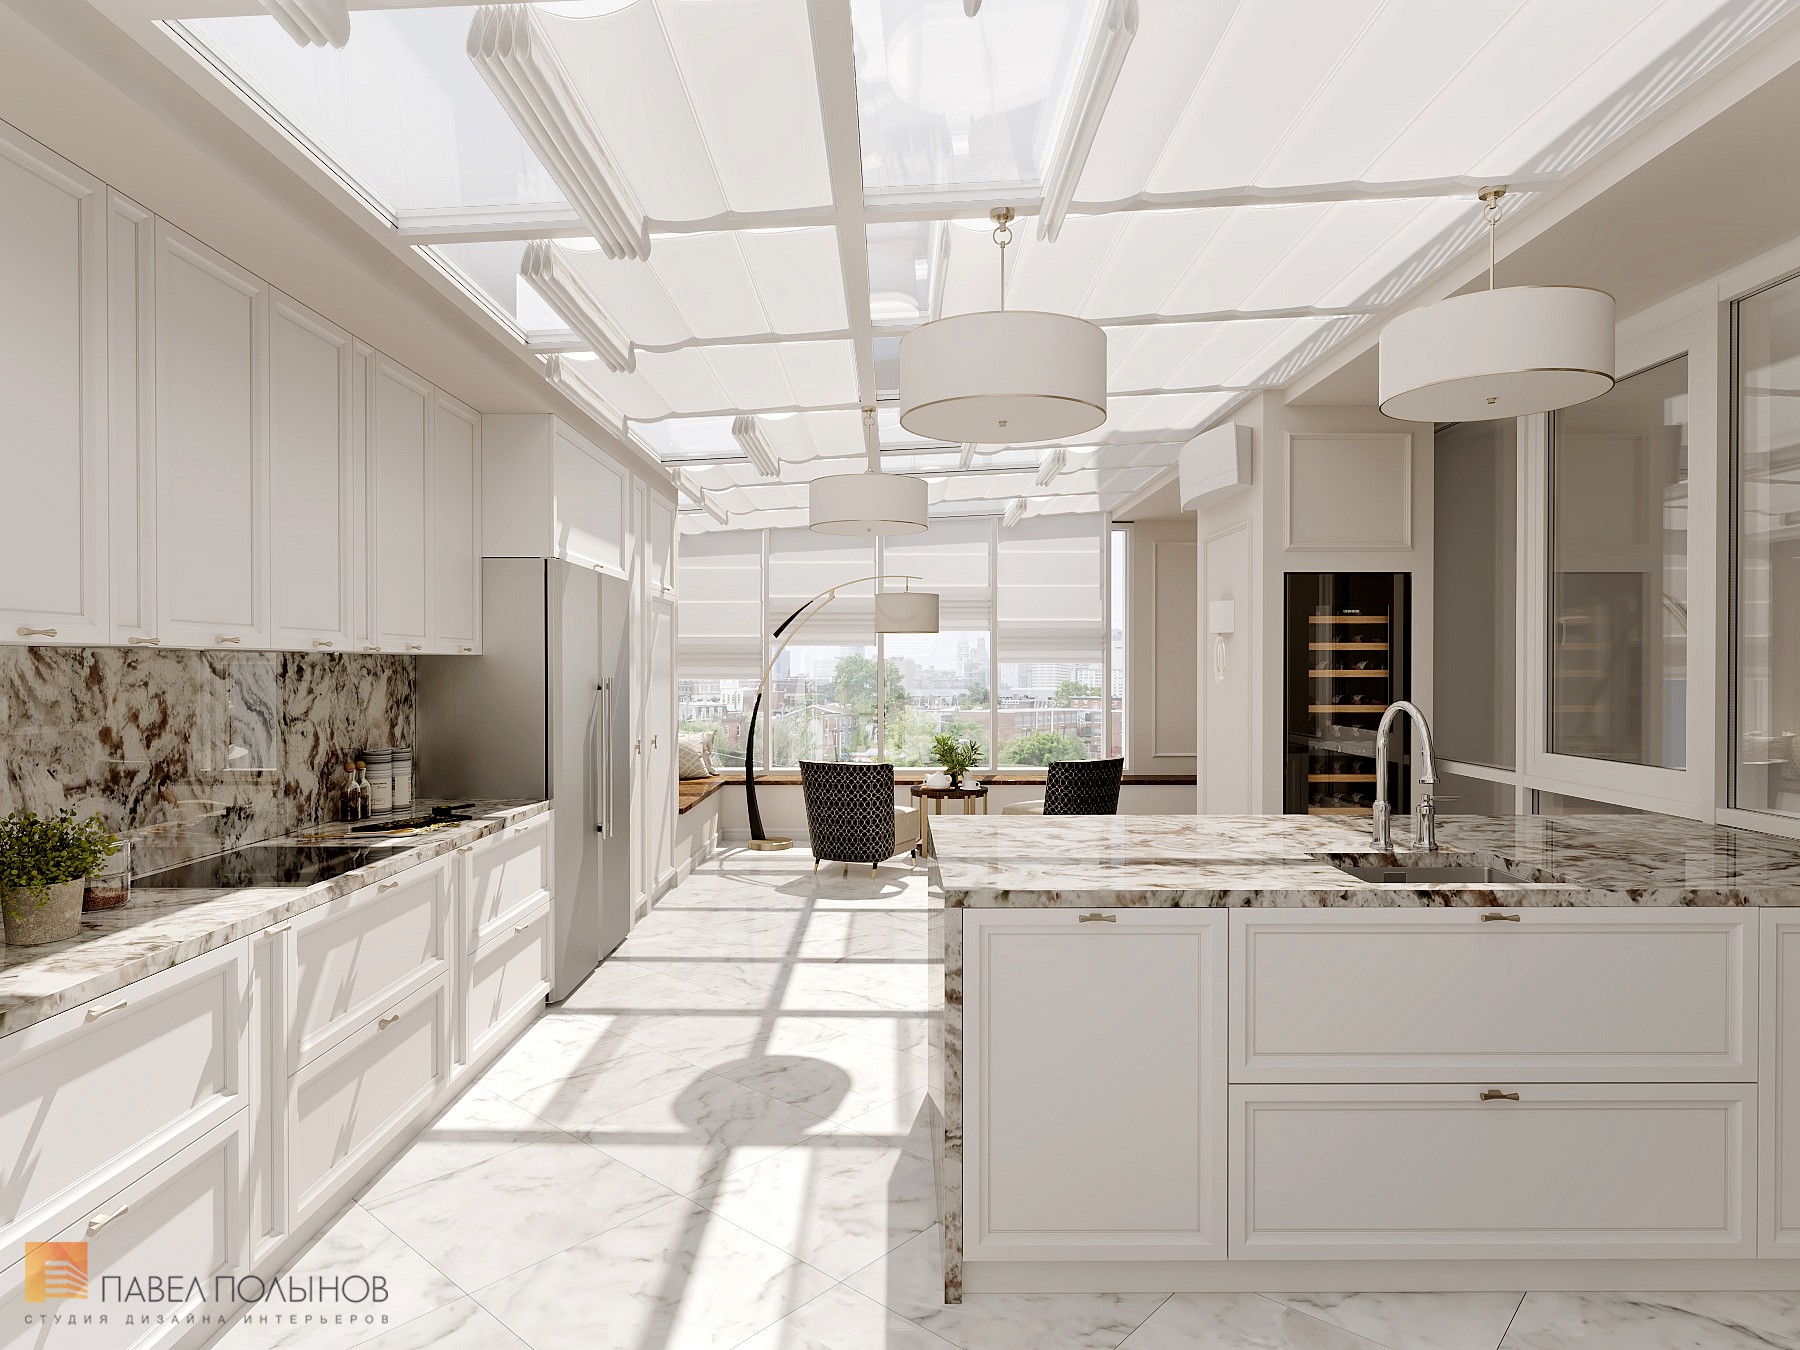 Фото дизайн кухни из проекта «Интерьер квартиры 200 кв.м. в стиле Ар-деко, ЖК «Граф Орлов»»